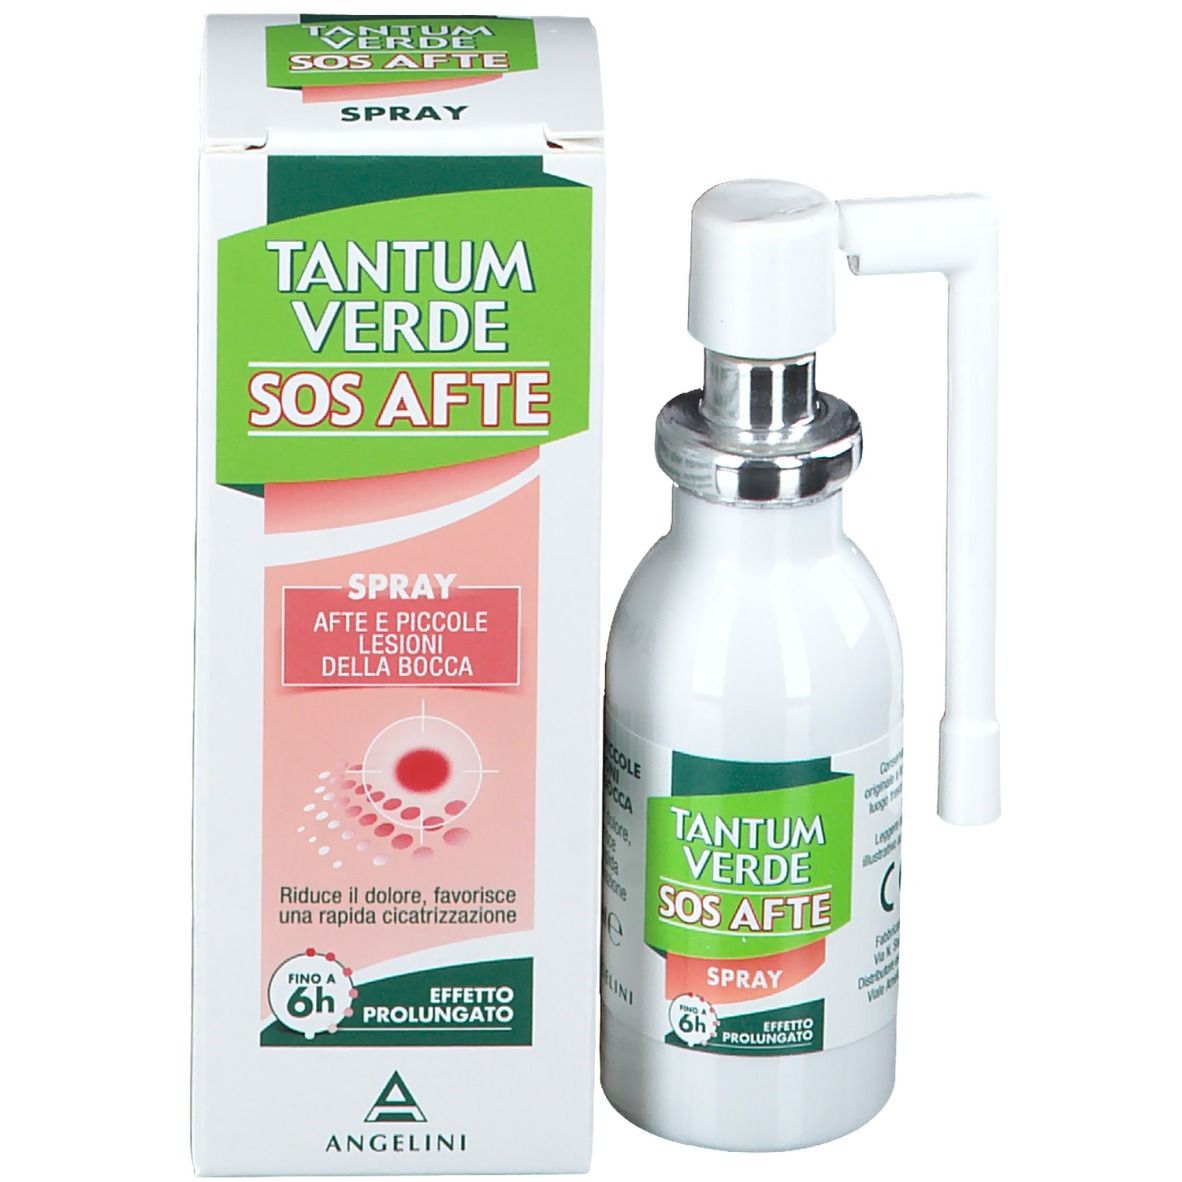 Tantum Verde SOS Afte Spray